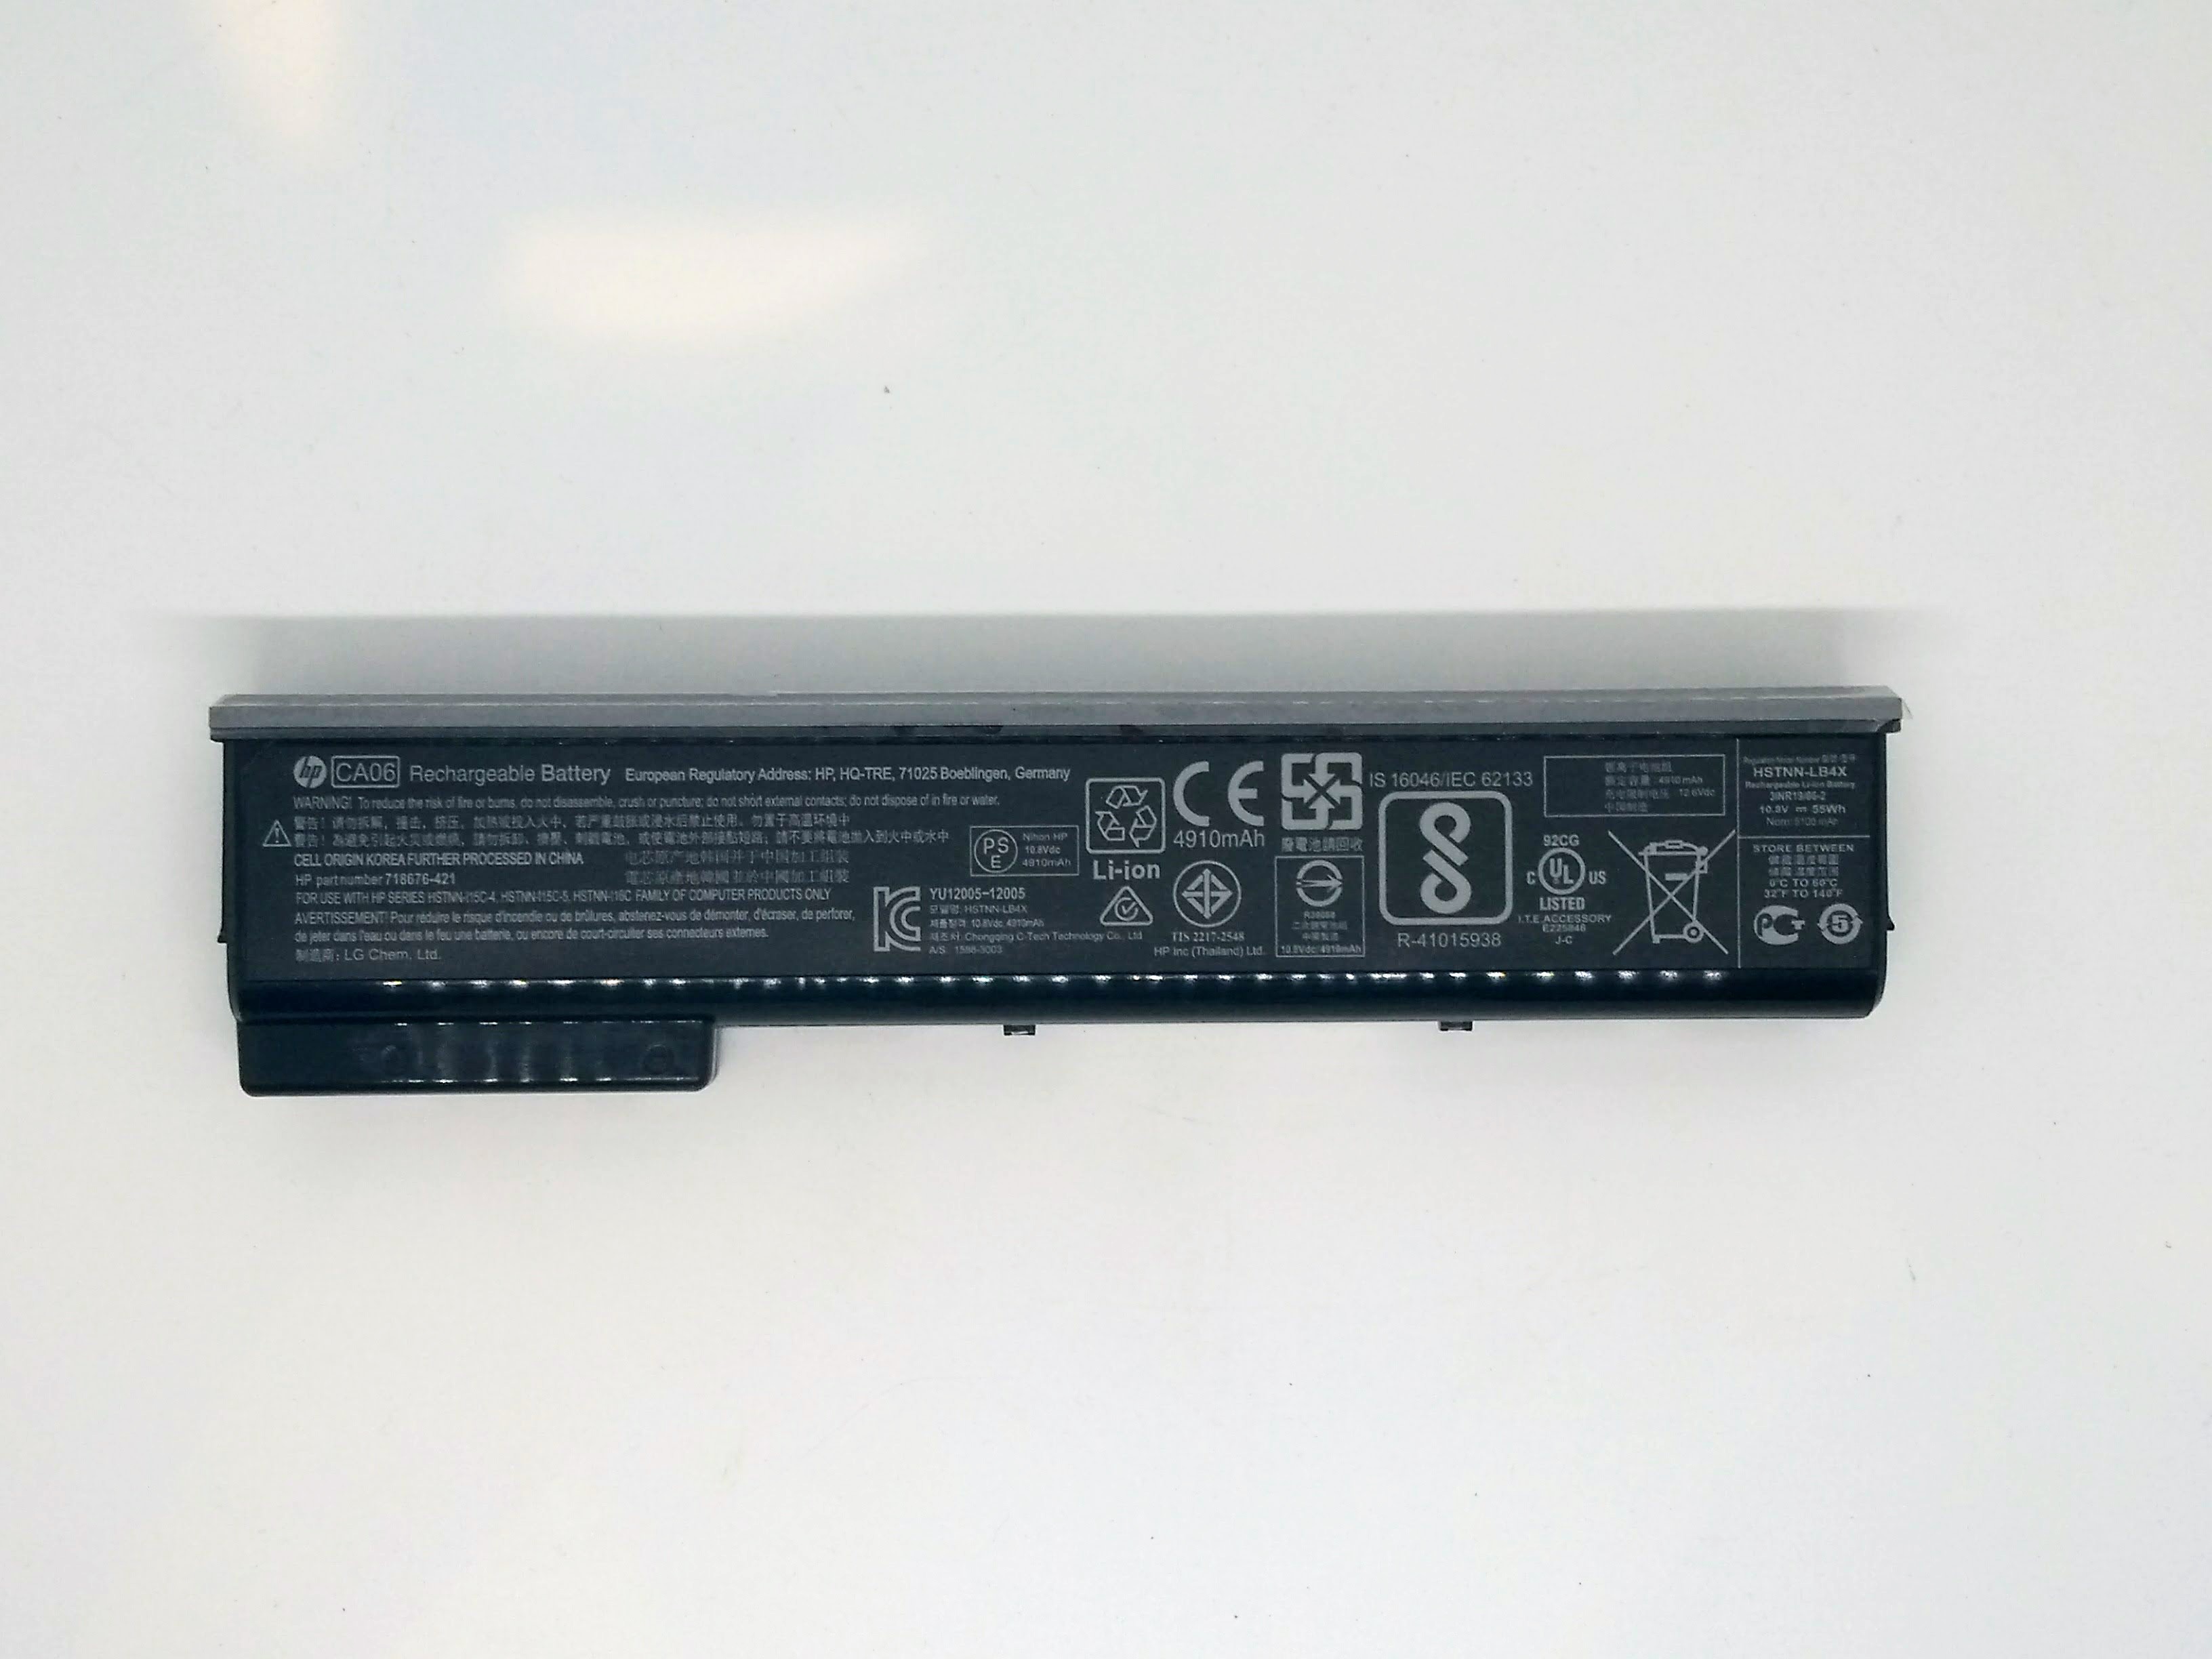 HP ProBook 640 G1 Laptop (P5G29US) Battery 718755-001